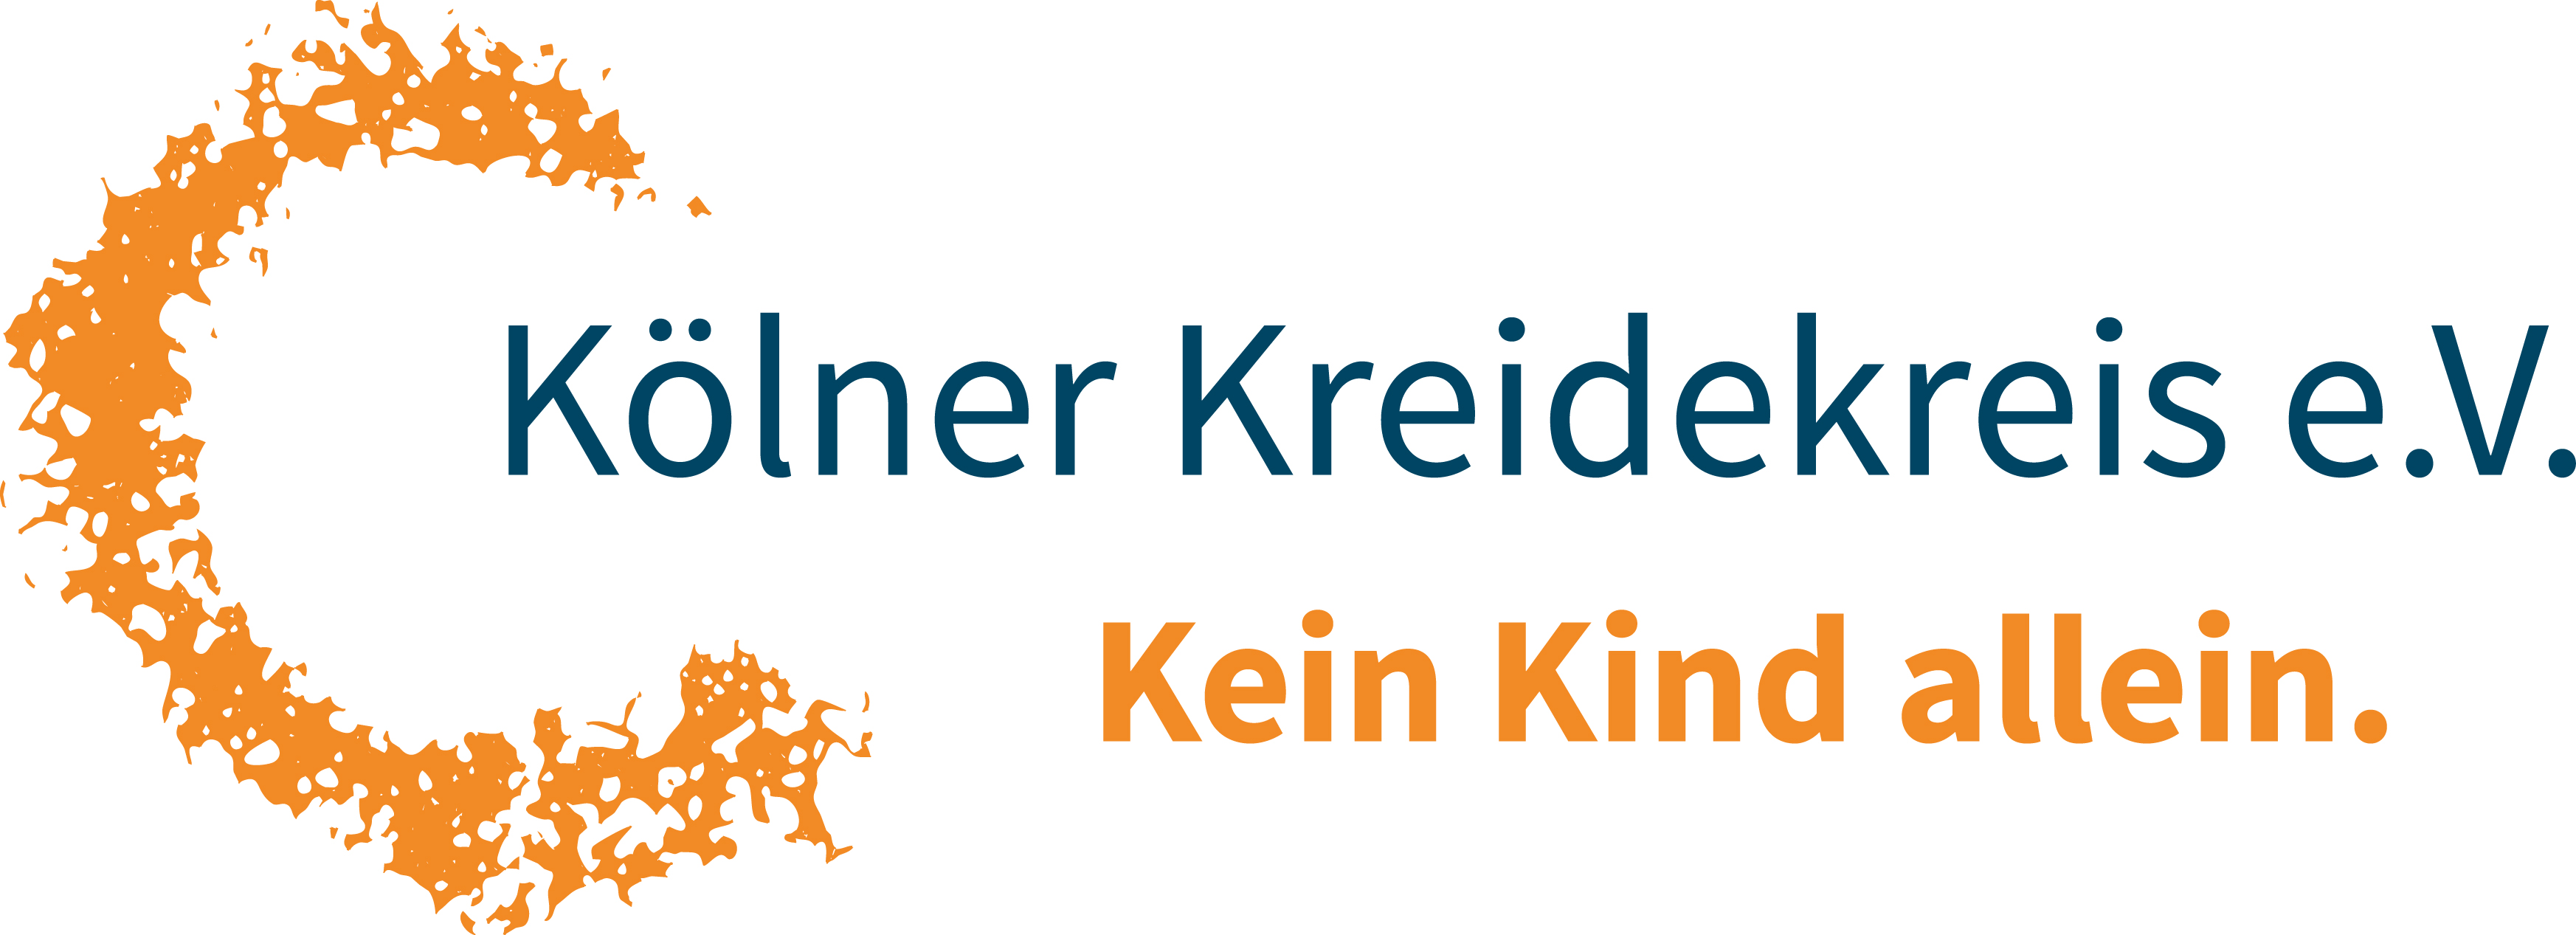 Kölner Kreidekreis e.V.